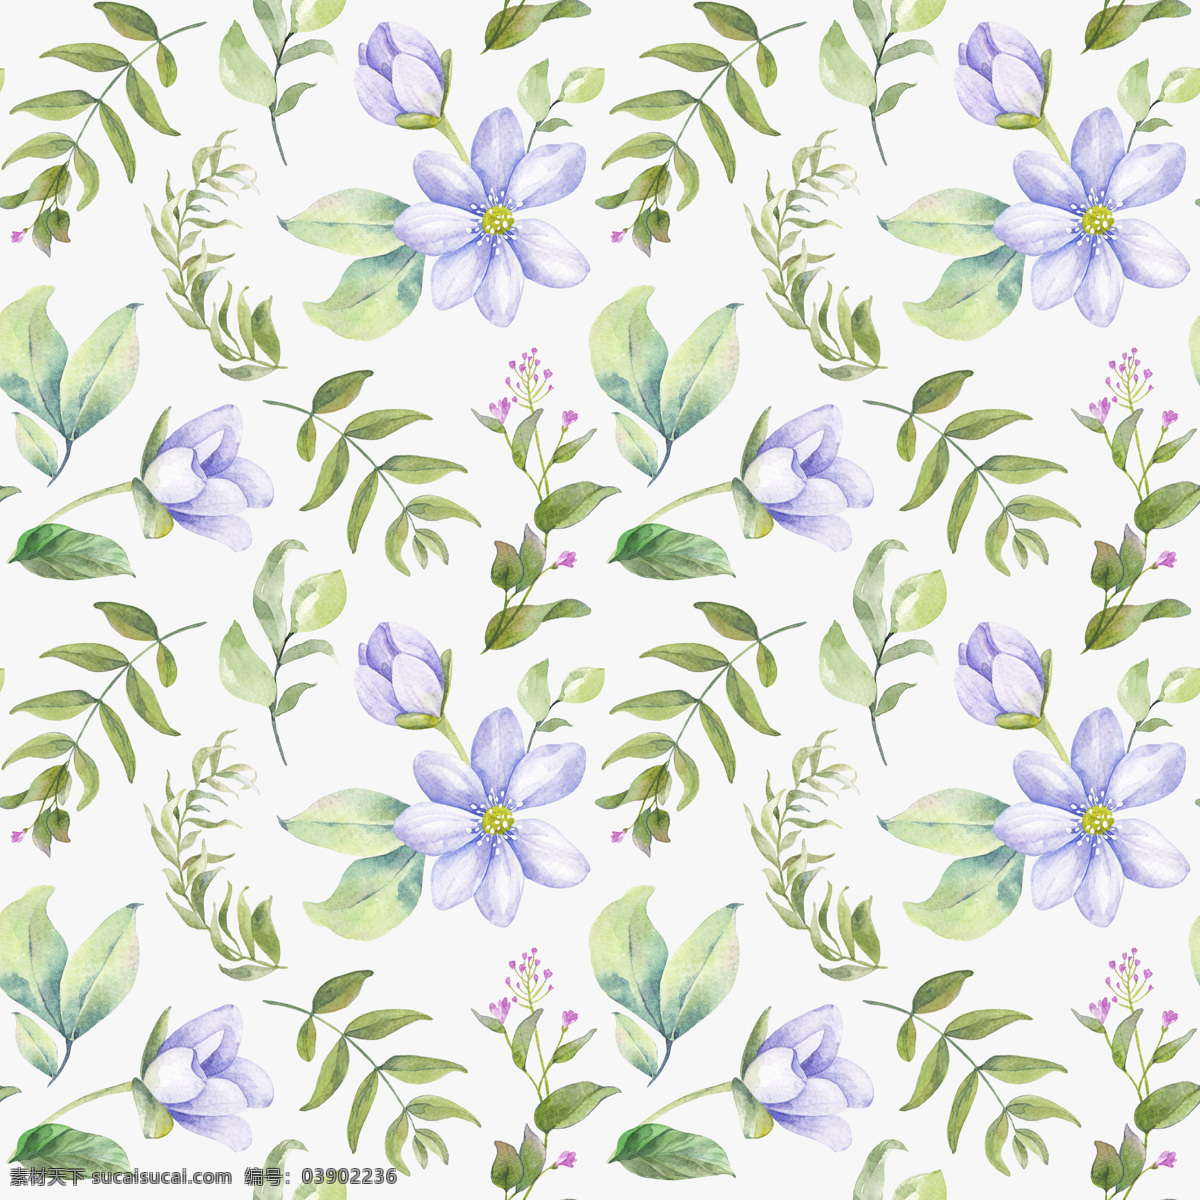 清雅 素净 白色 花草 背景 背景素材 花卉 绿色 树叶 填充背景 紫色